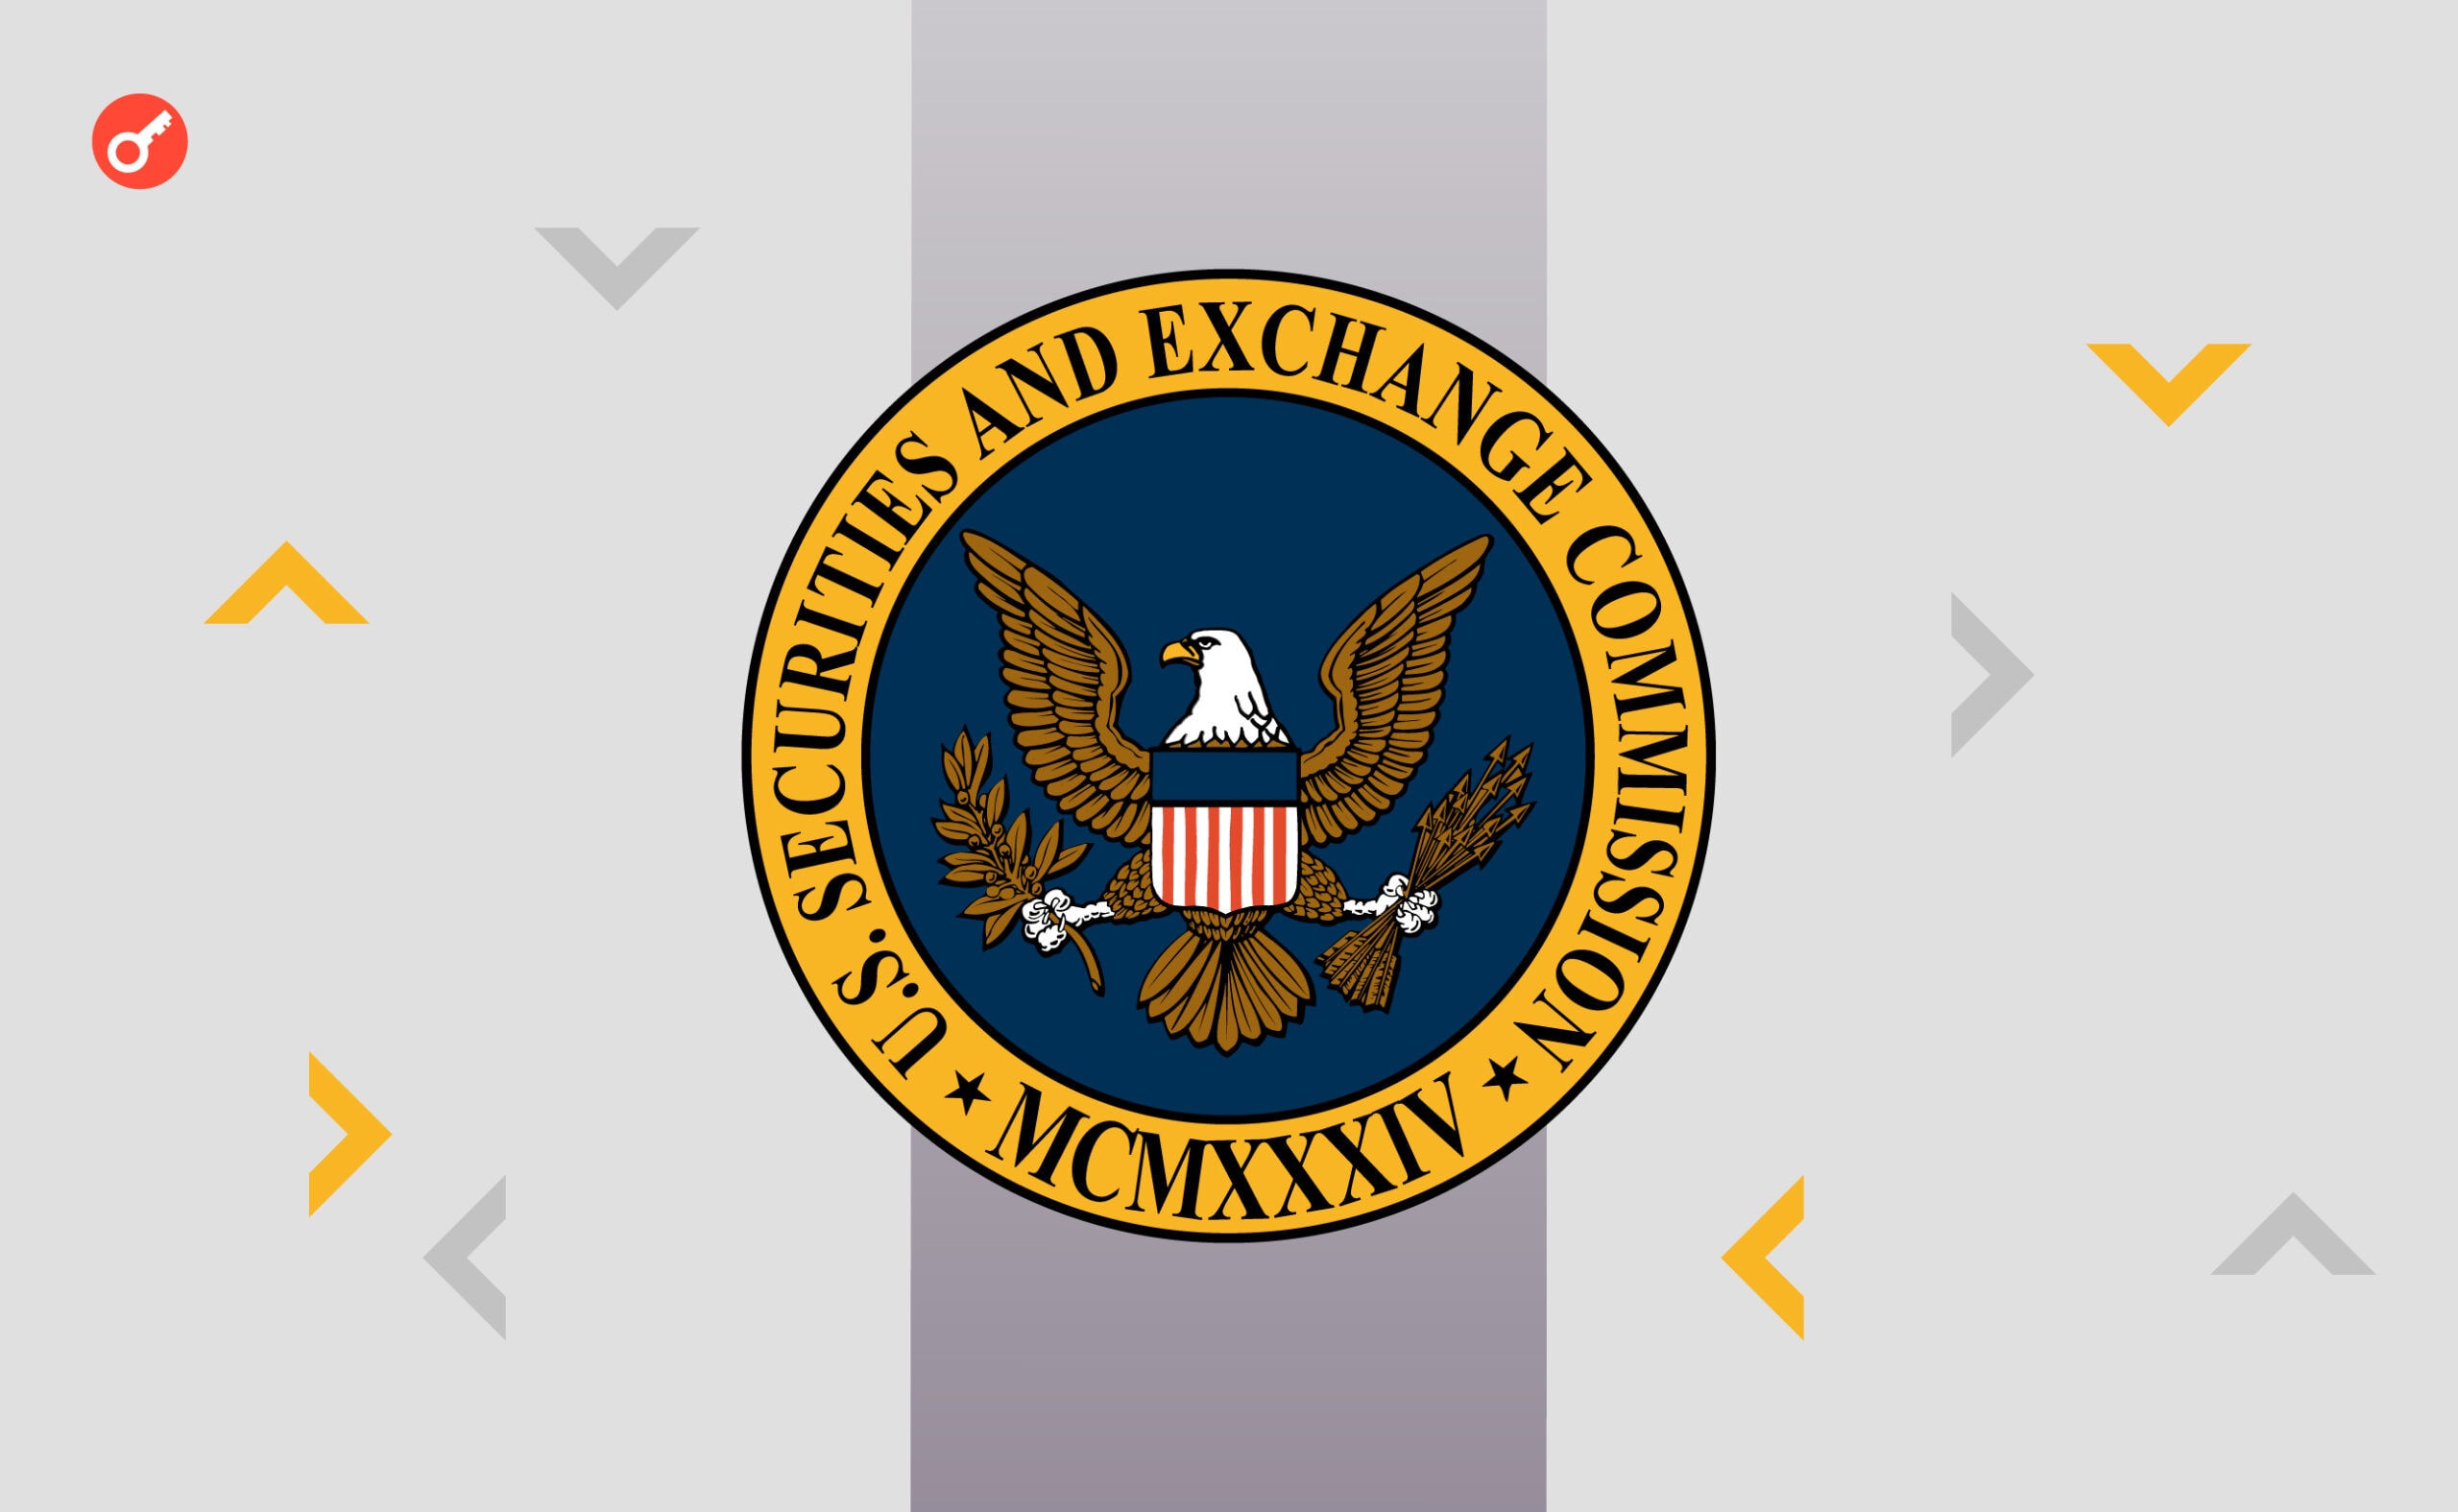 SEC не має повноважень для регулювання криптовалютного сегмента — екс-радник регулятора. Головний колаж новини.